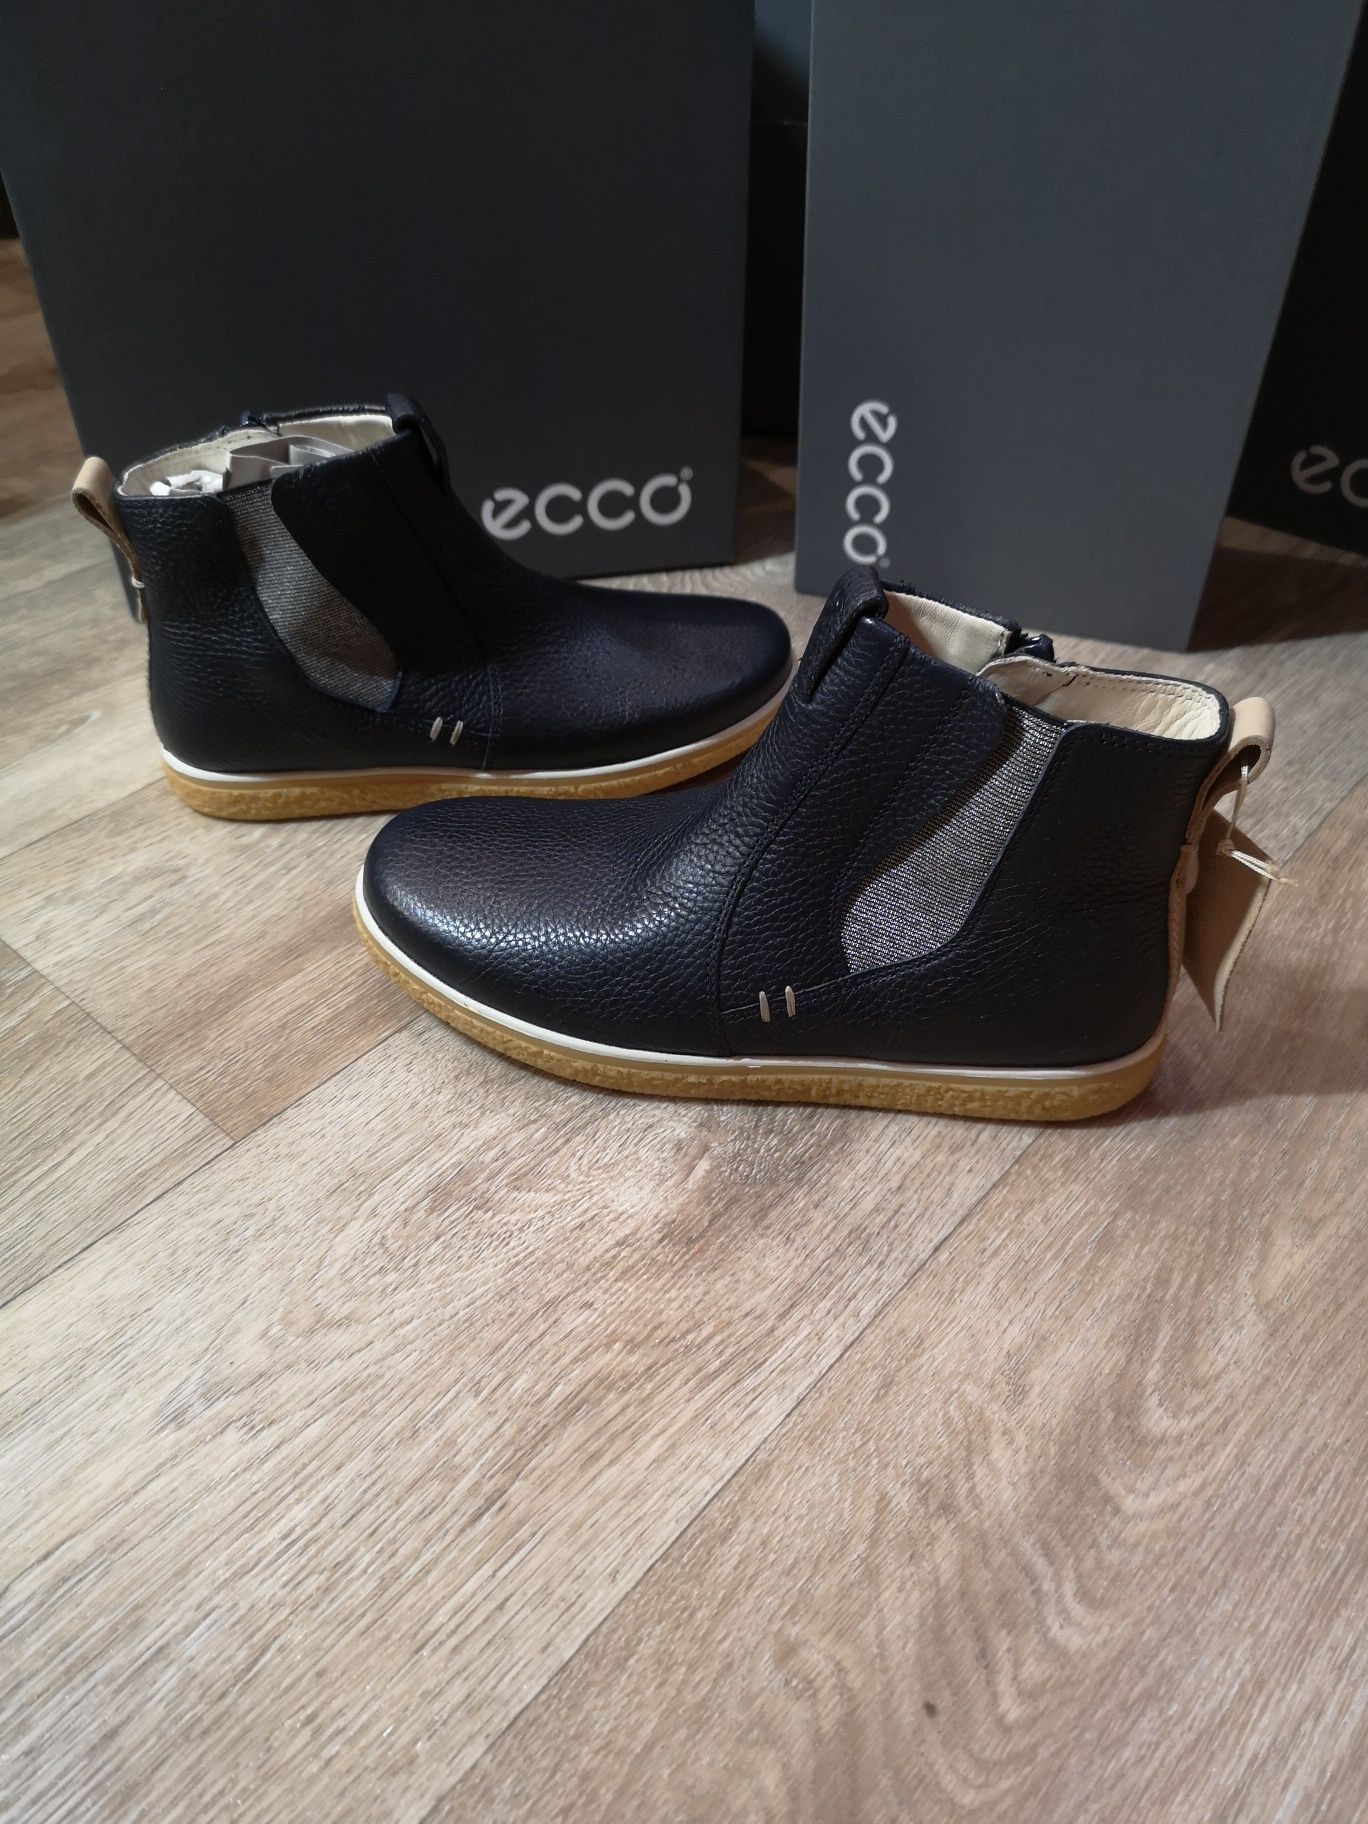 Ботинки демисезонные для девочки Ecco